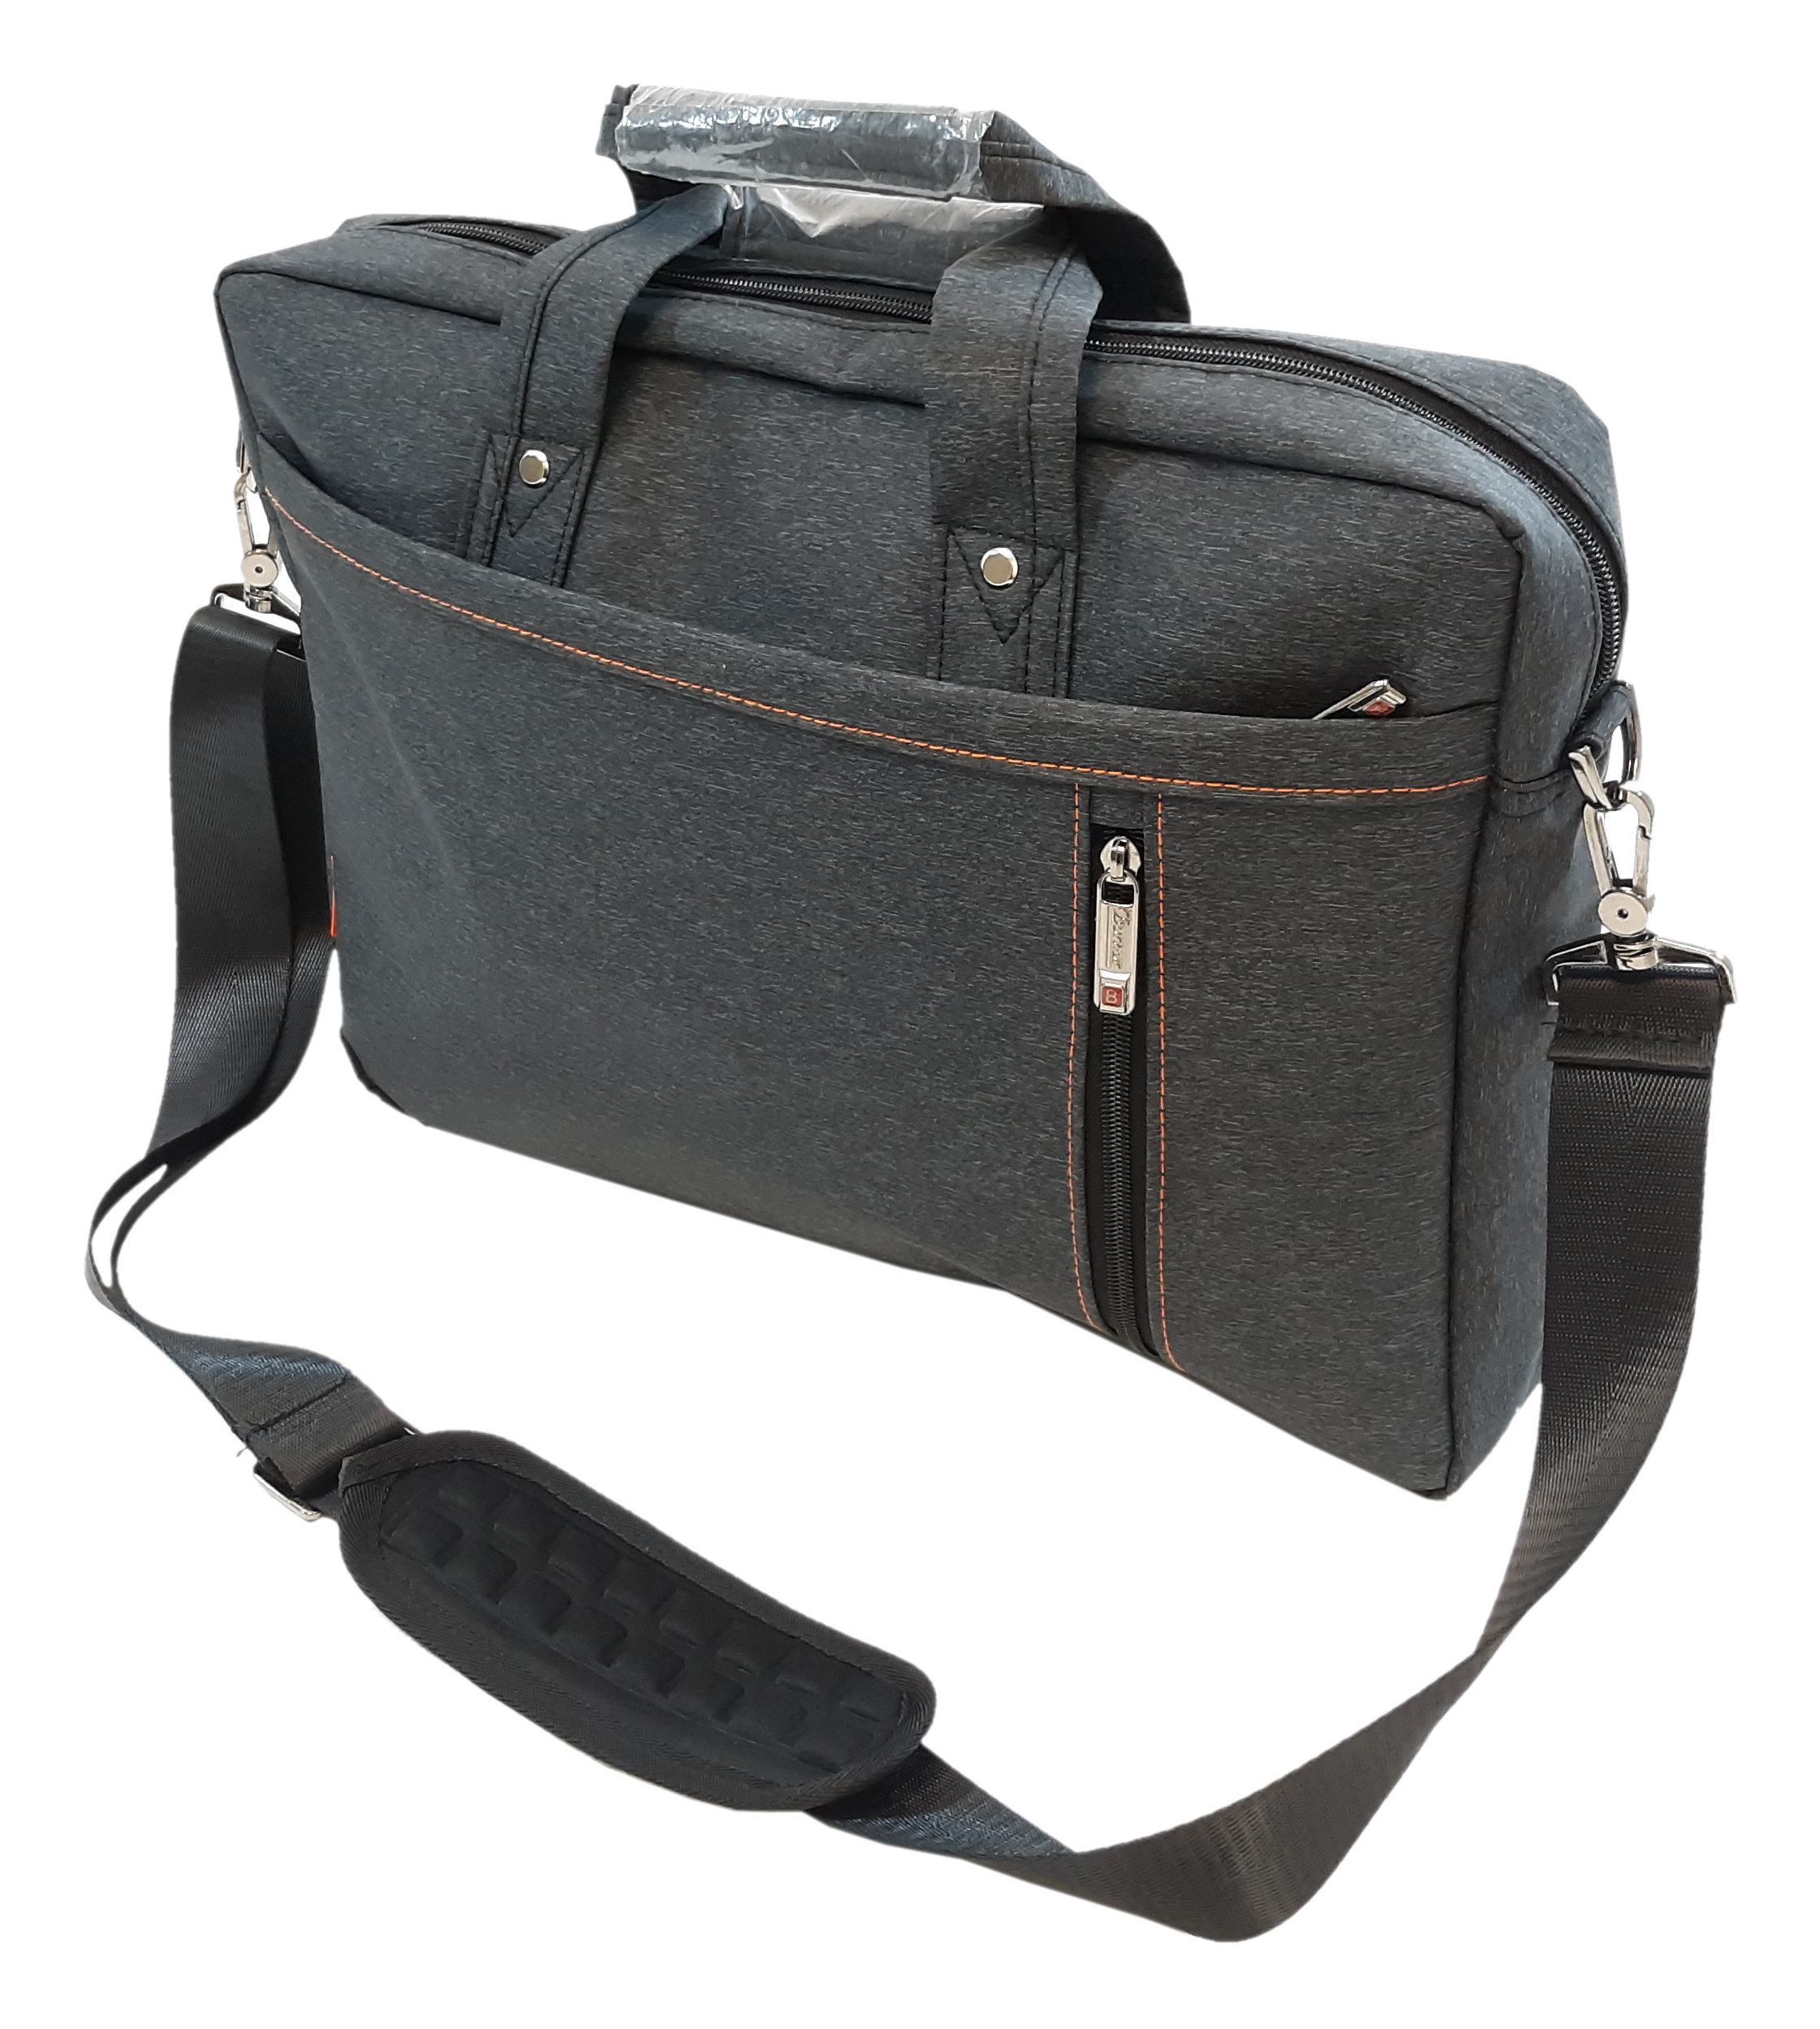 Burnur Durable Laptop Bag 15.6" Shockproof Airbag Waterproof Black BRN928SJ01-15 JLDLTB156-DUP